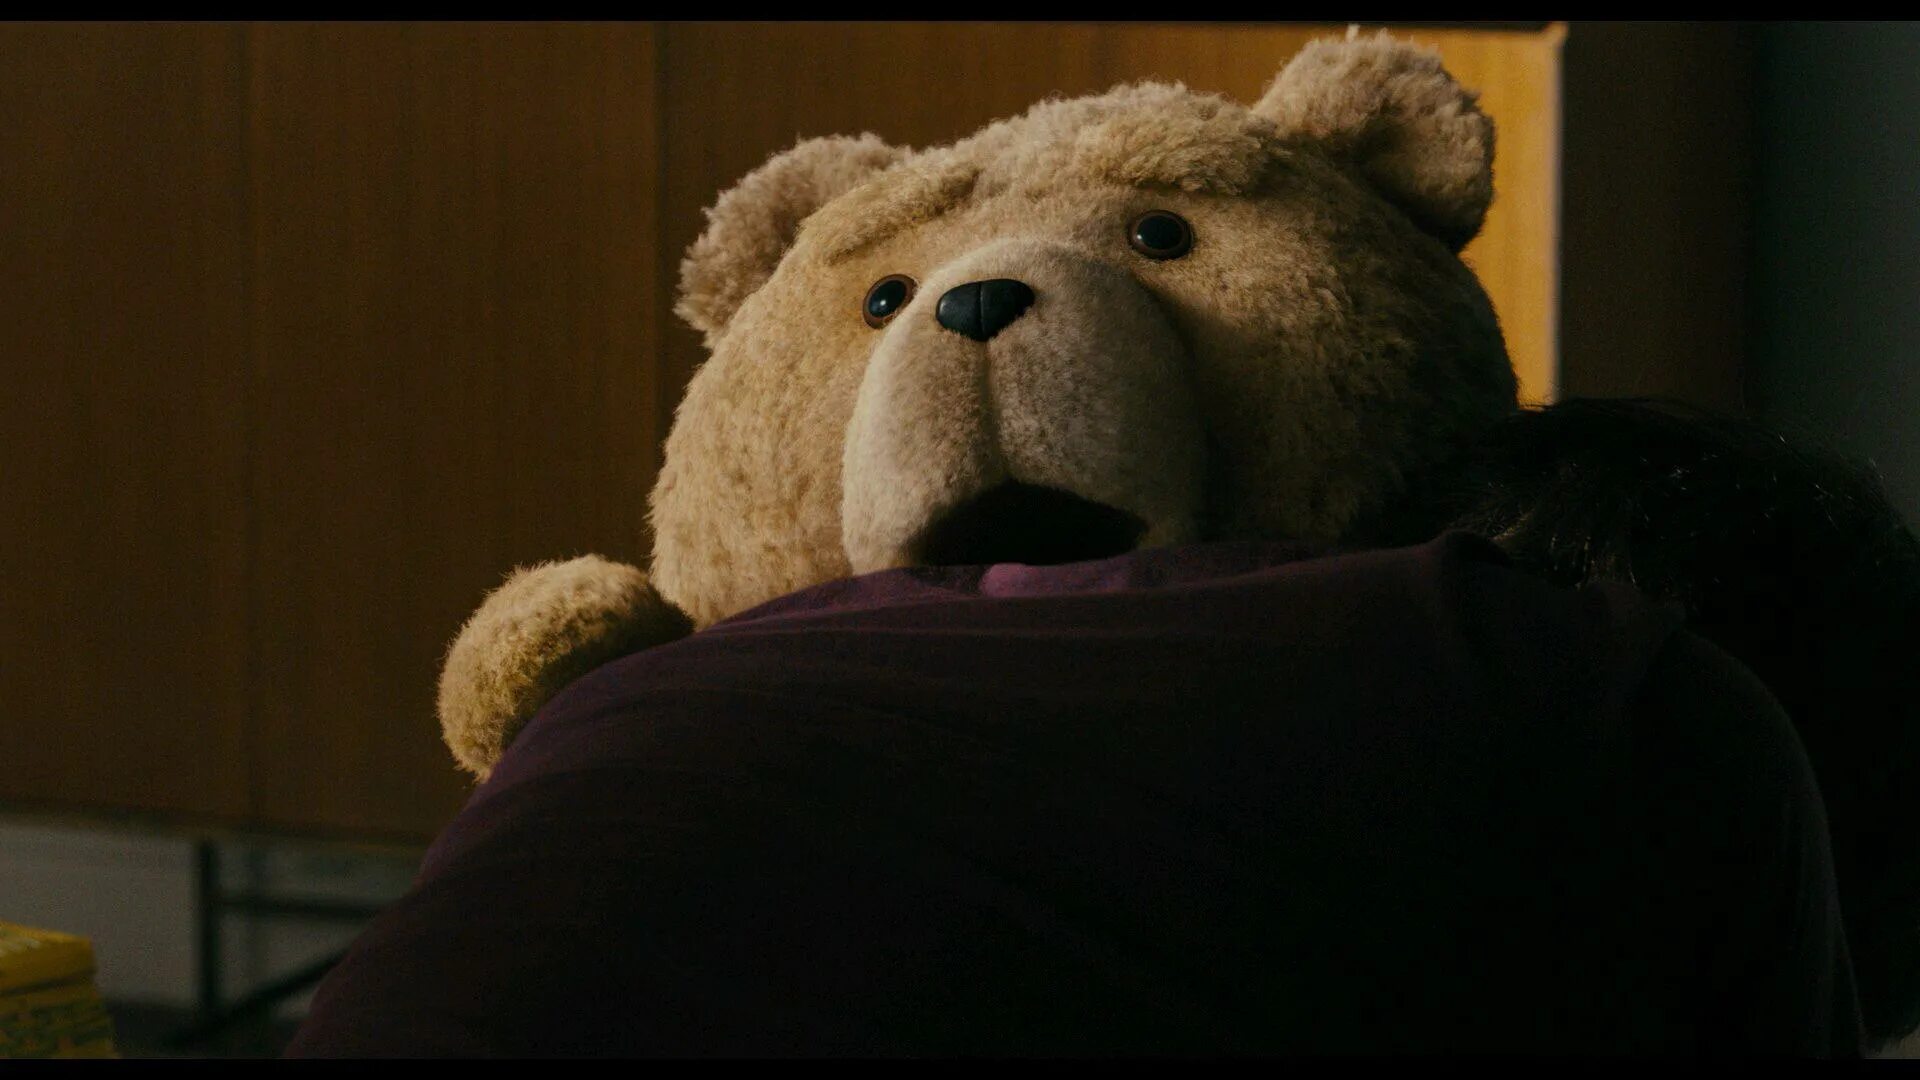 Третий лишний 1080. Тед 2012. Третий лишний / Ted (2012). Медведь Тед. Мишка Тед третий лишний.